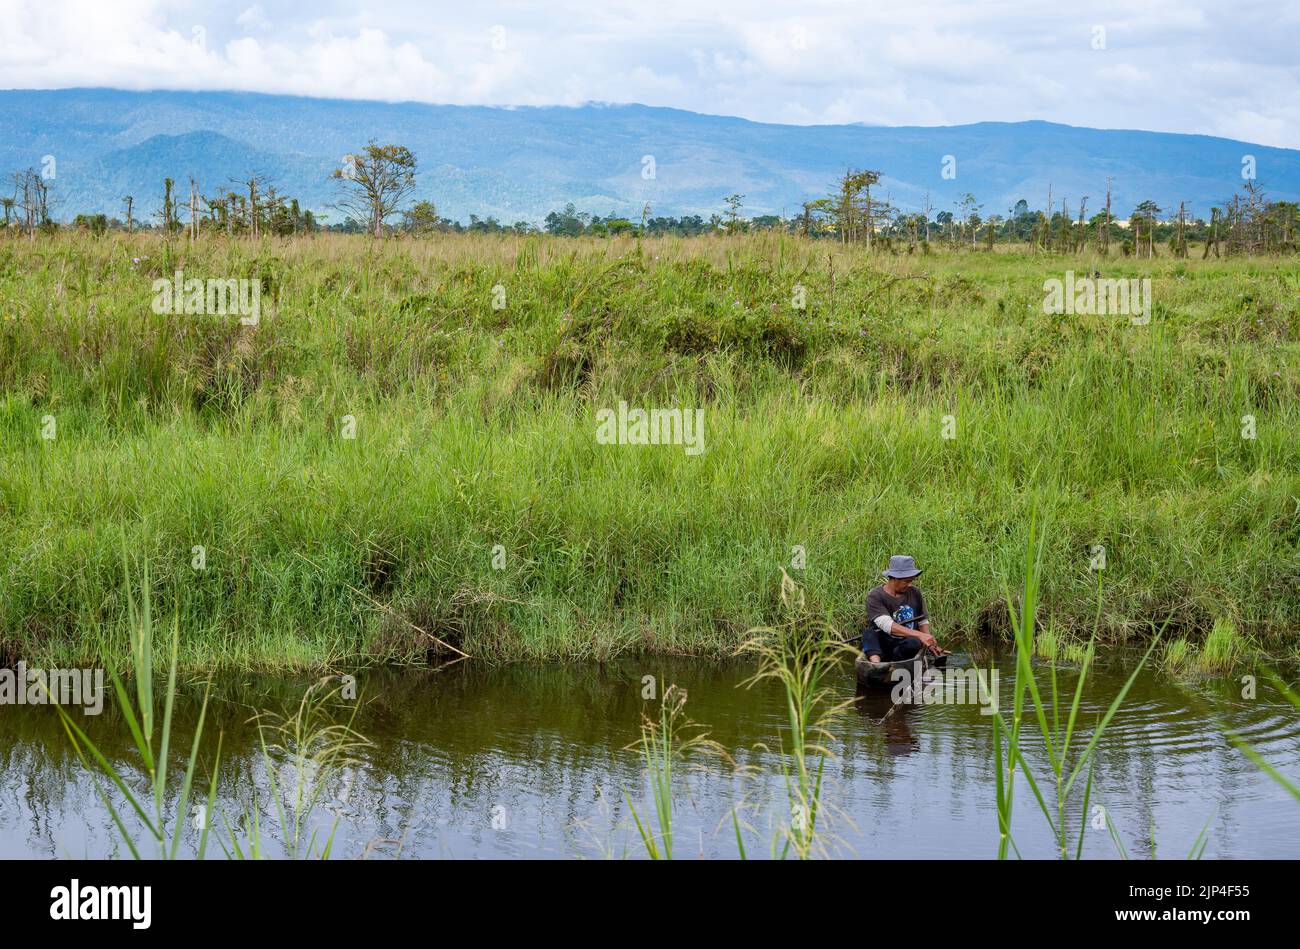 Ein einheimischer Mann in einem Eindugout-Kanu, der in einem See angeln kann. Sulawesi, Indonesien. Stockfoto